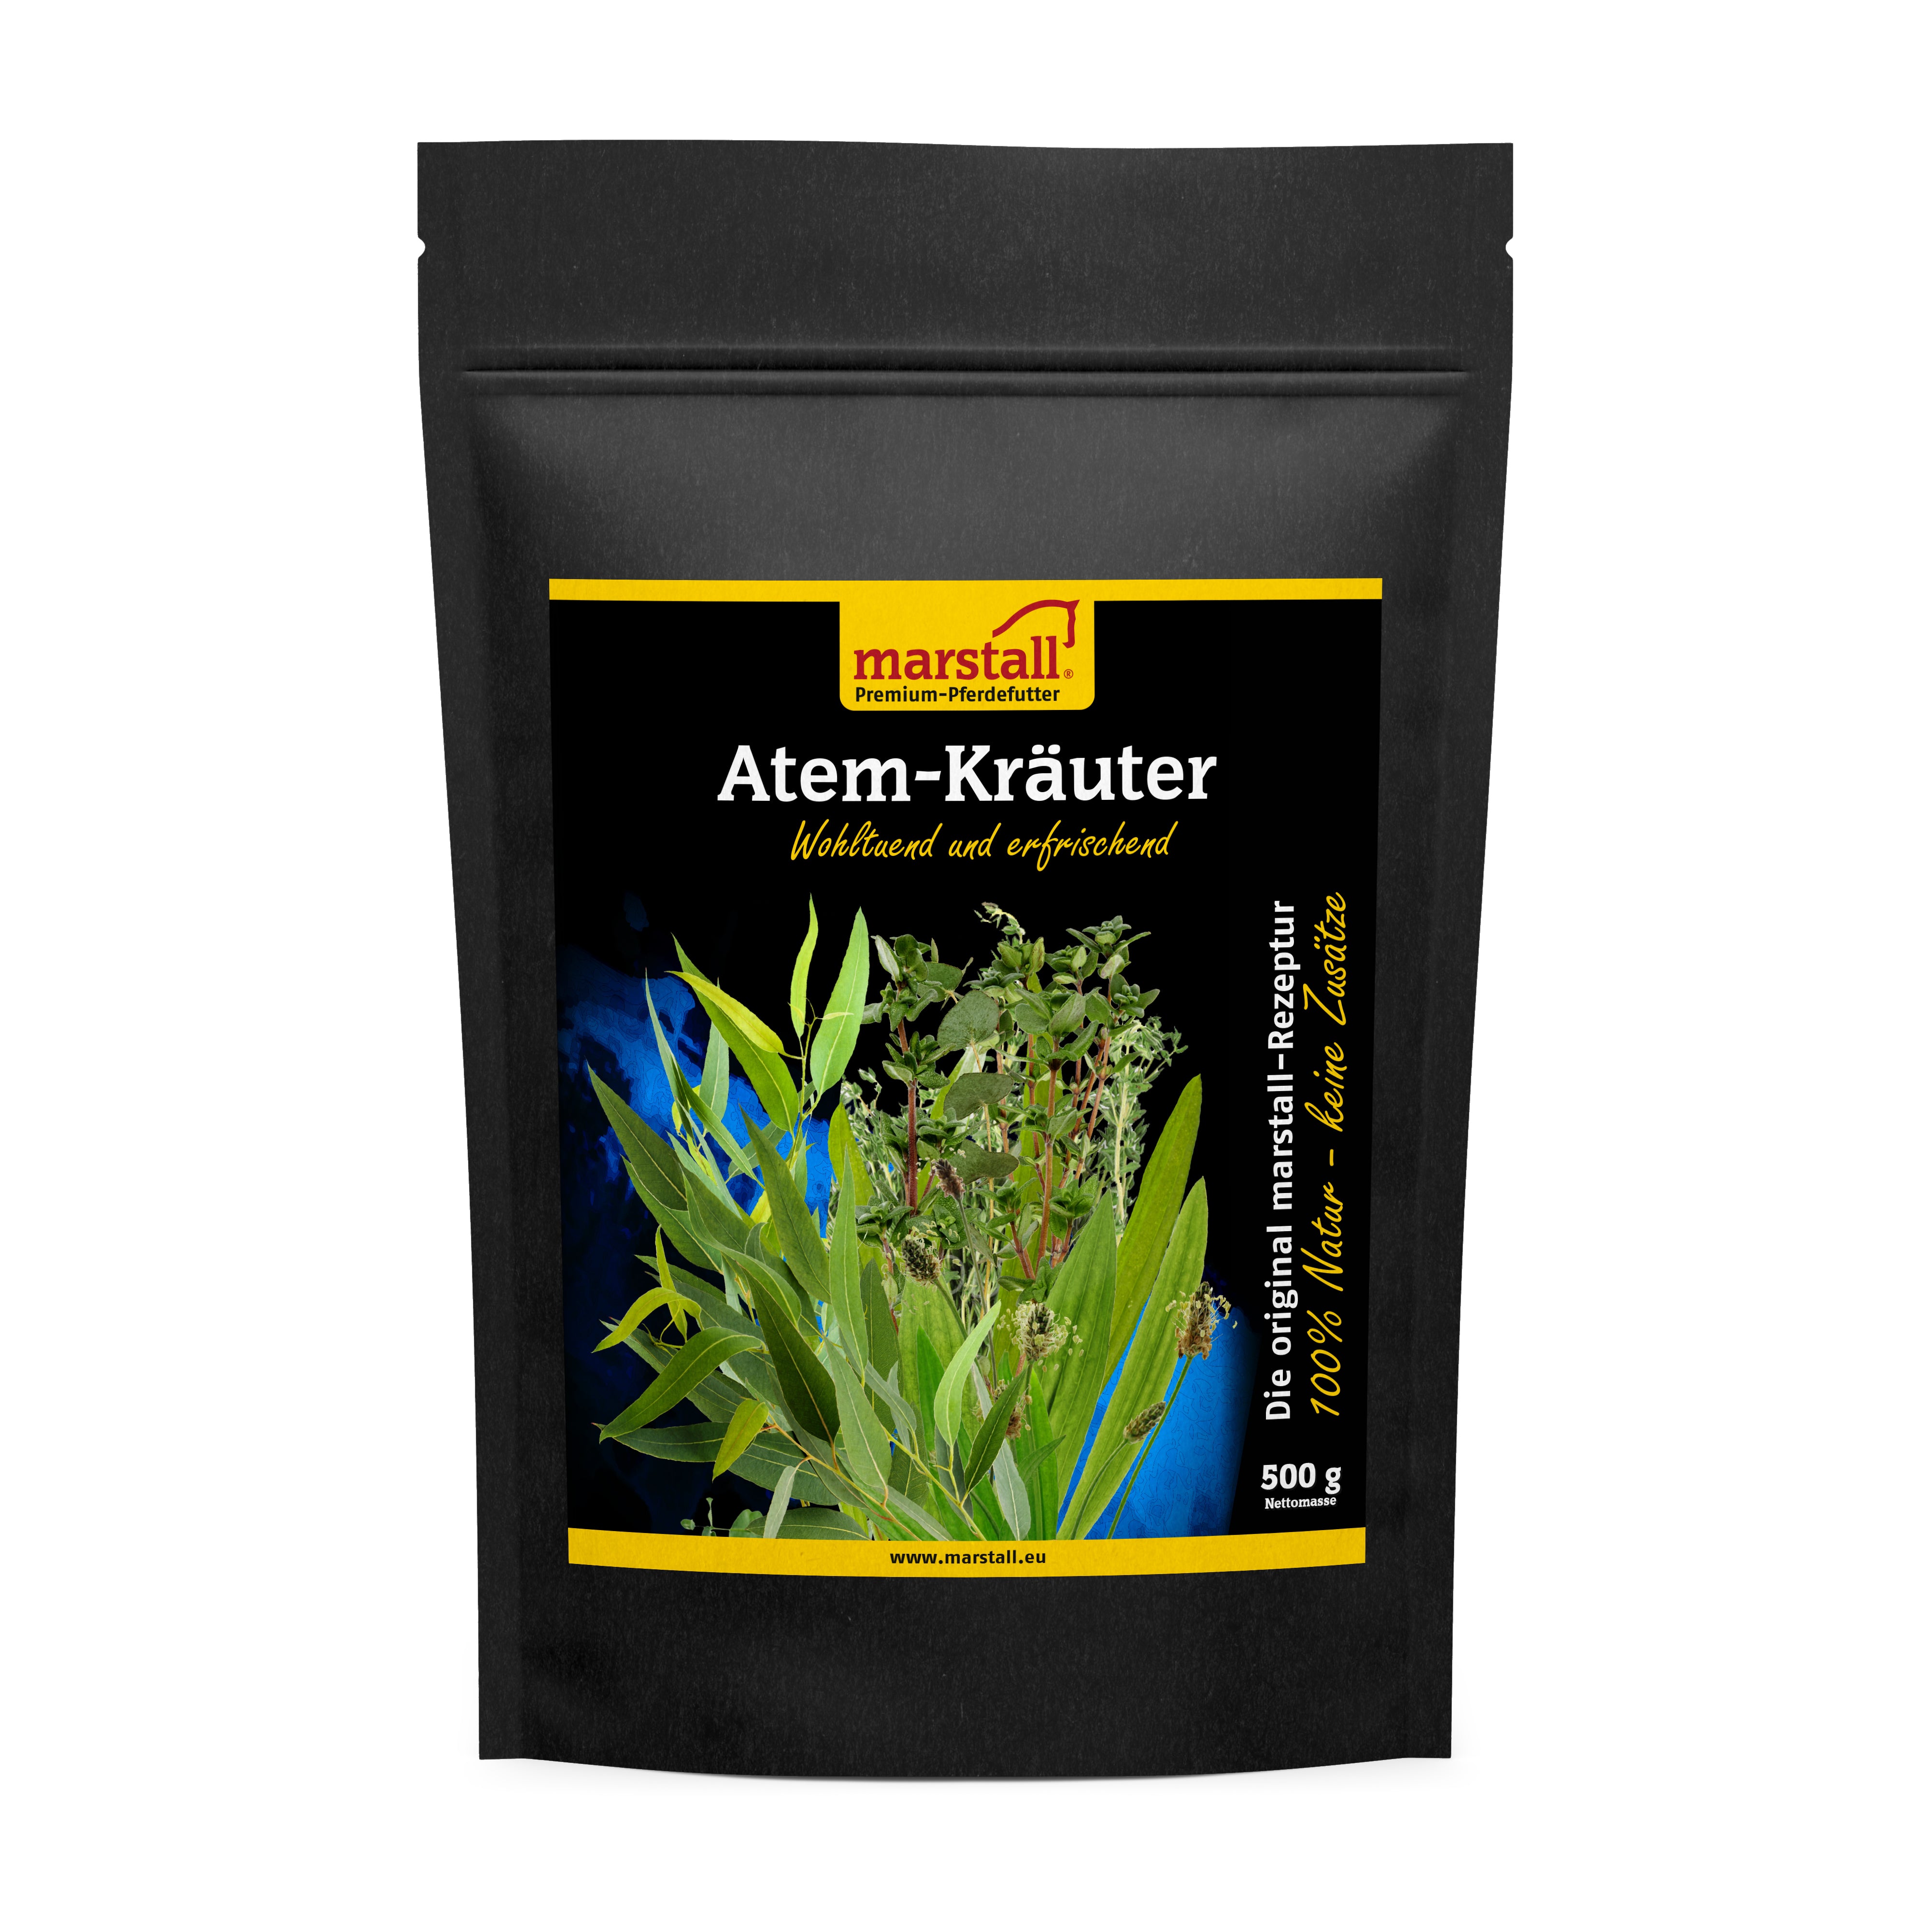 Marstall Atem-Kräuter 500 g